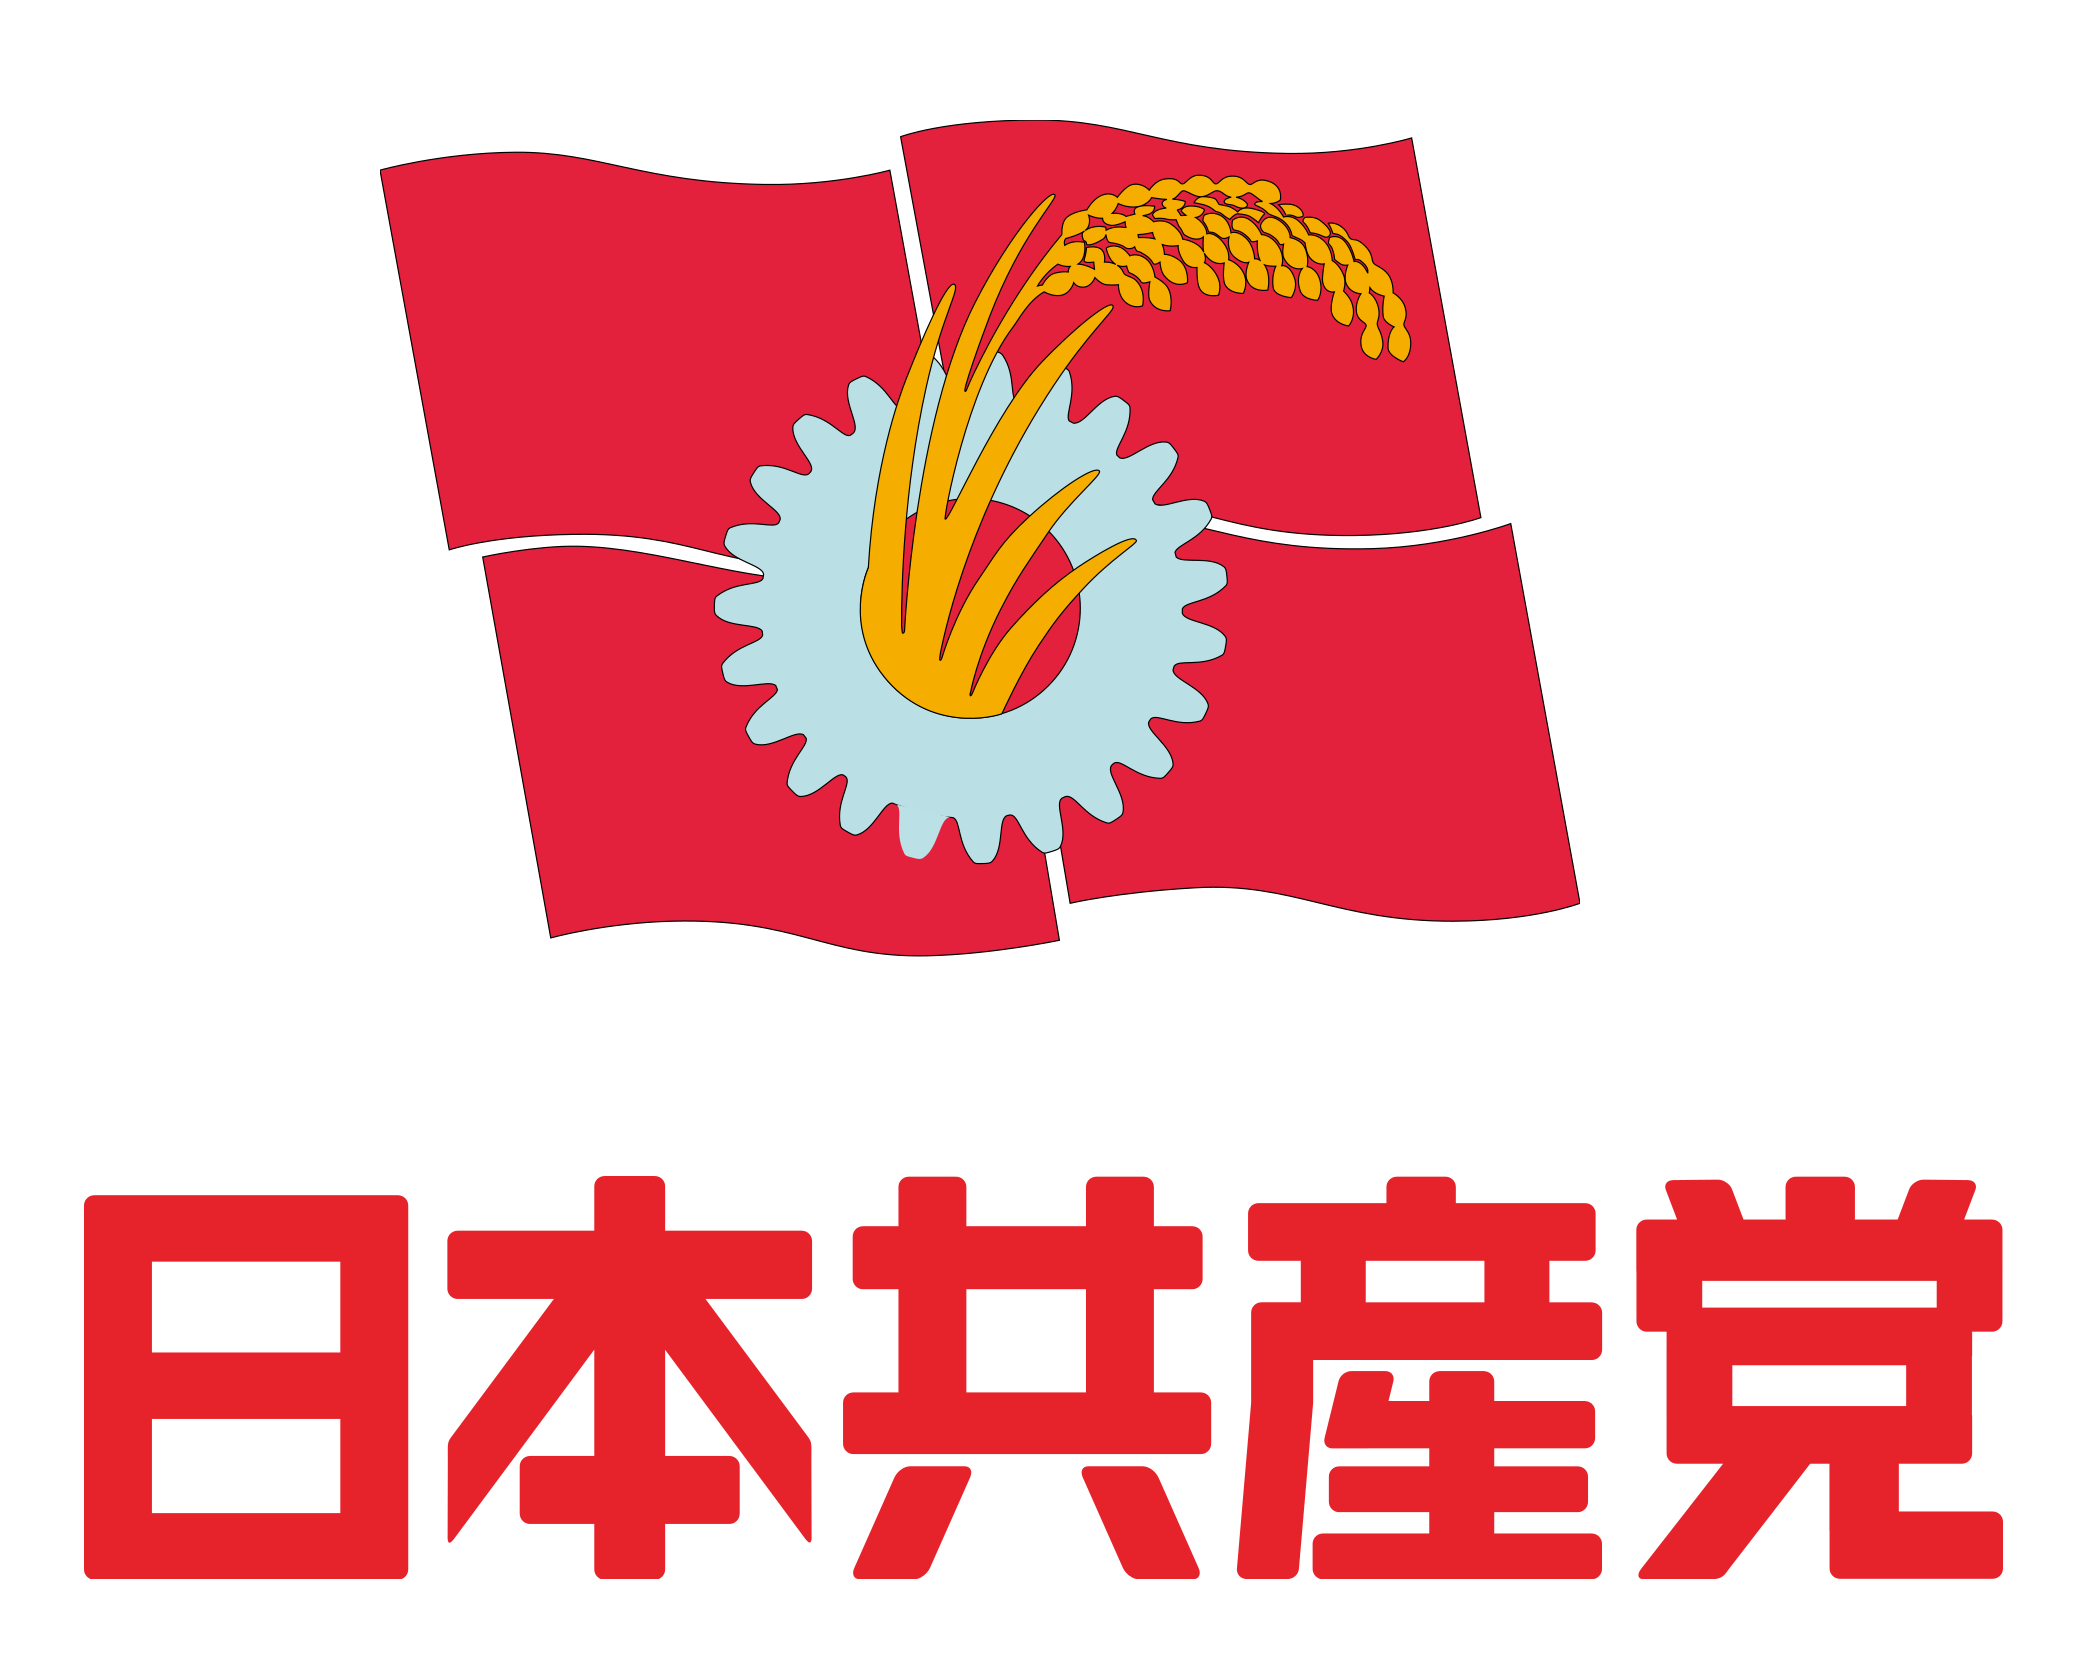 Le Parti communiste japonais remporte 5 sièges dans la ville de Tomigusuku